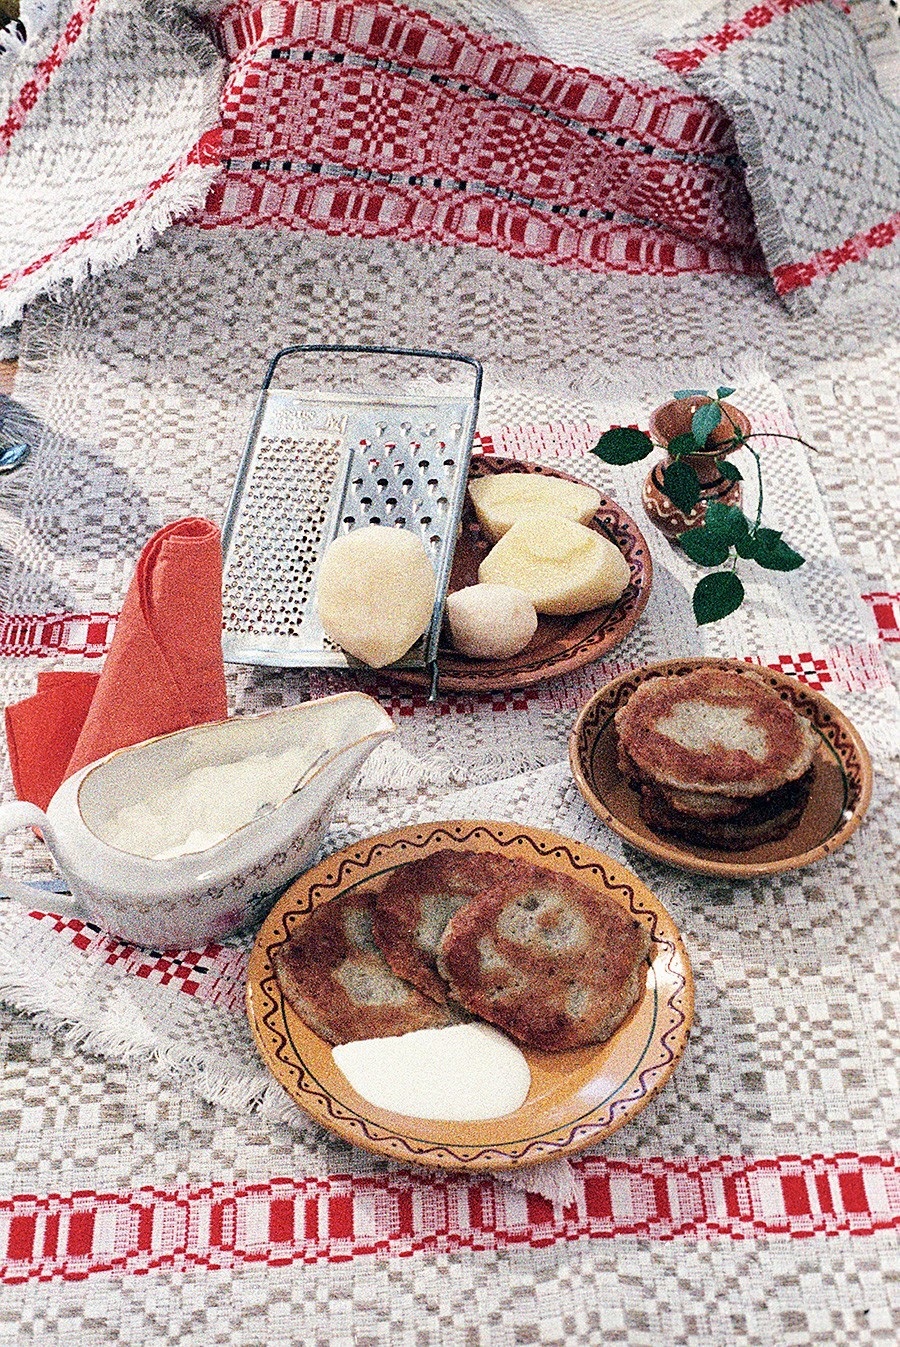 Krompirjeve palačinke, 1987

